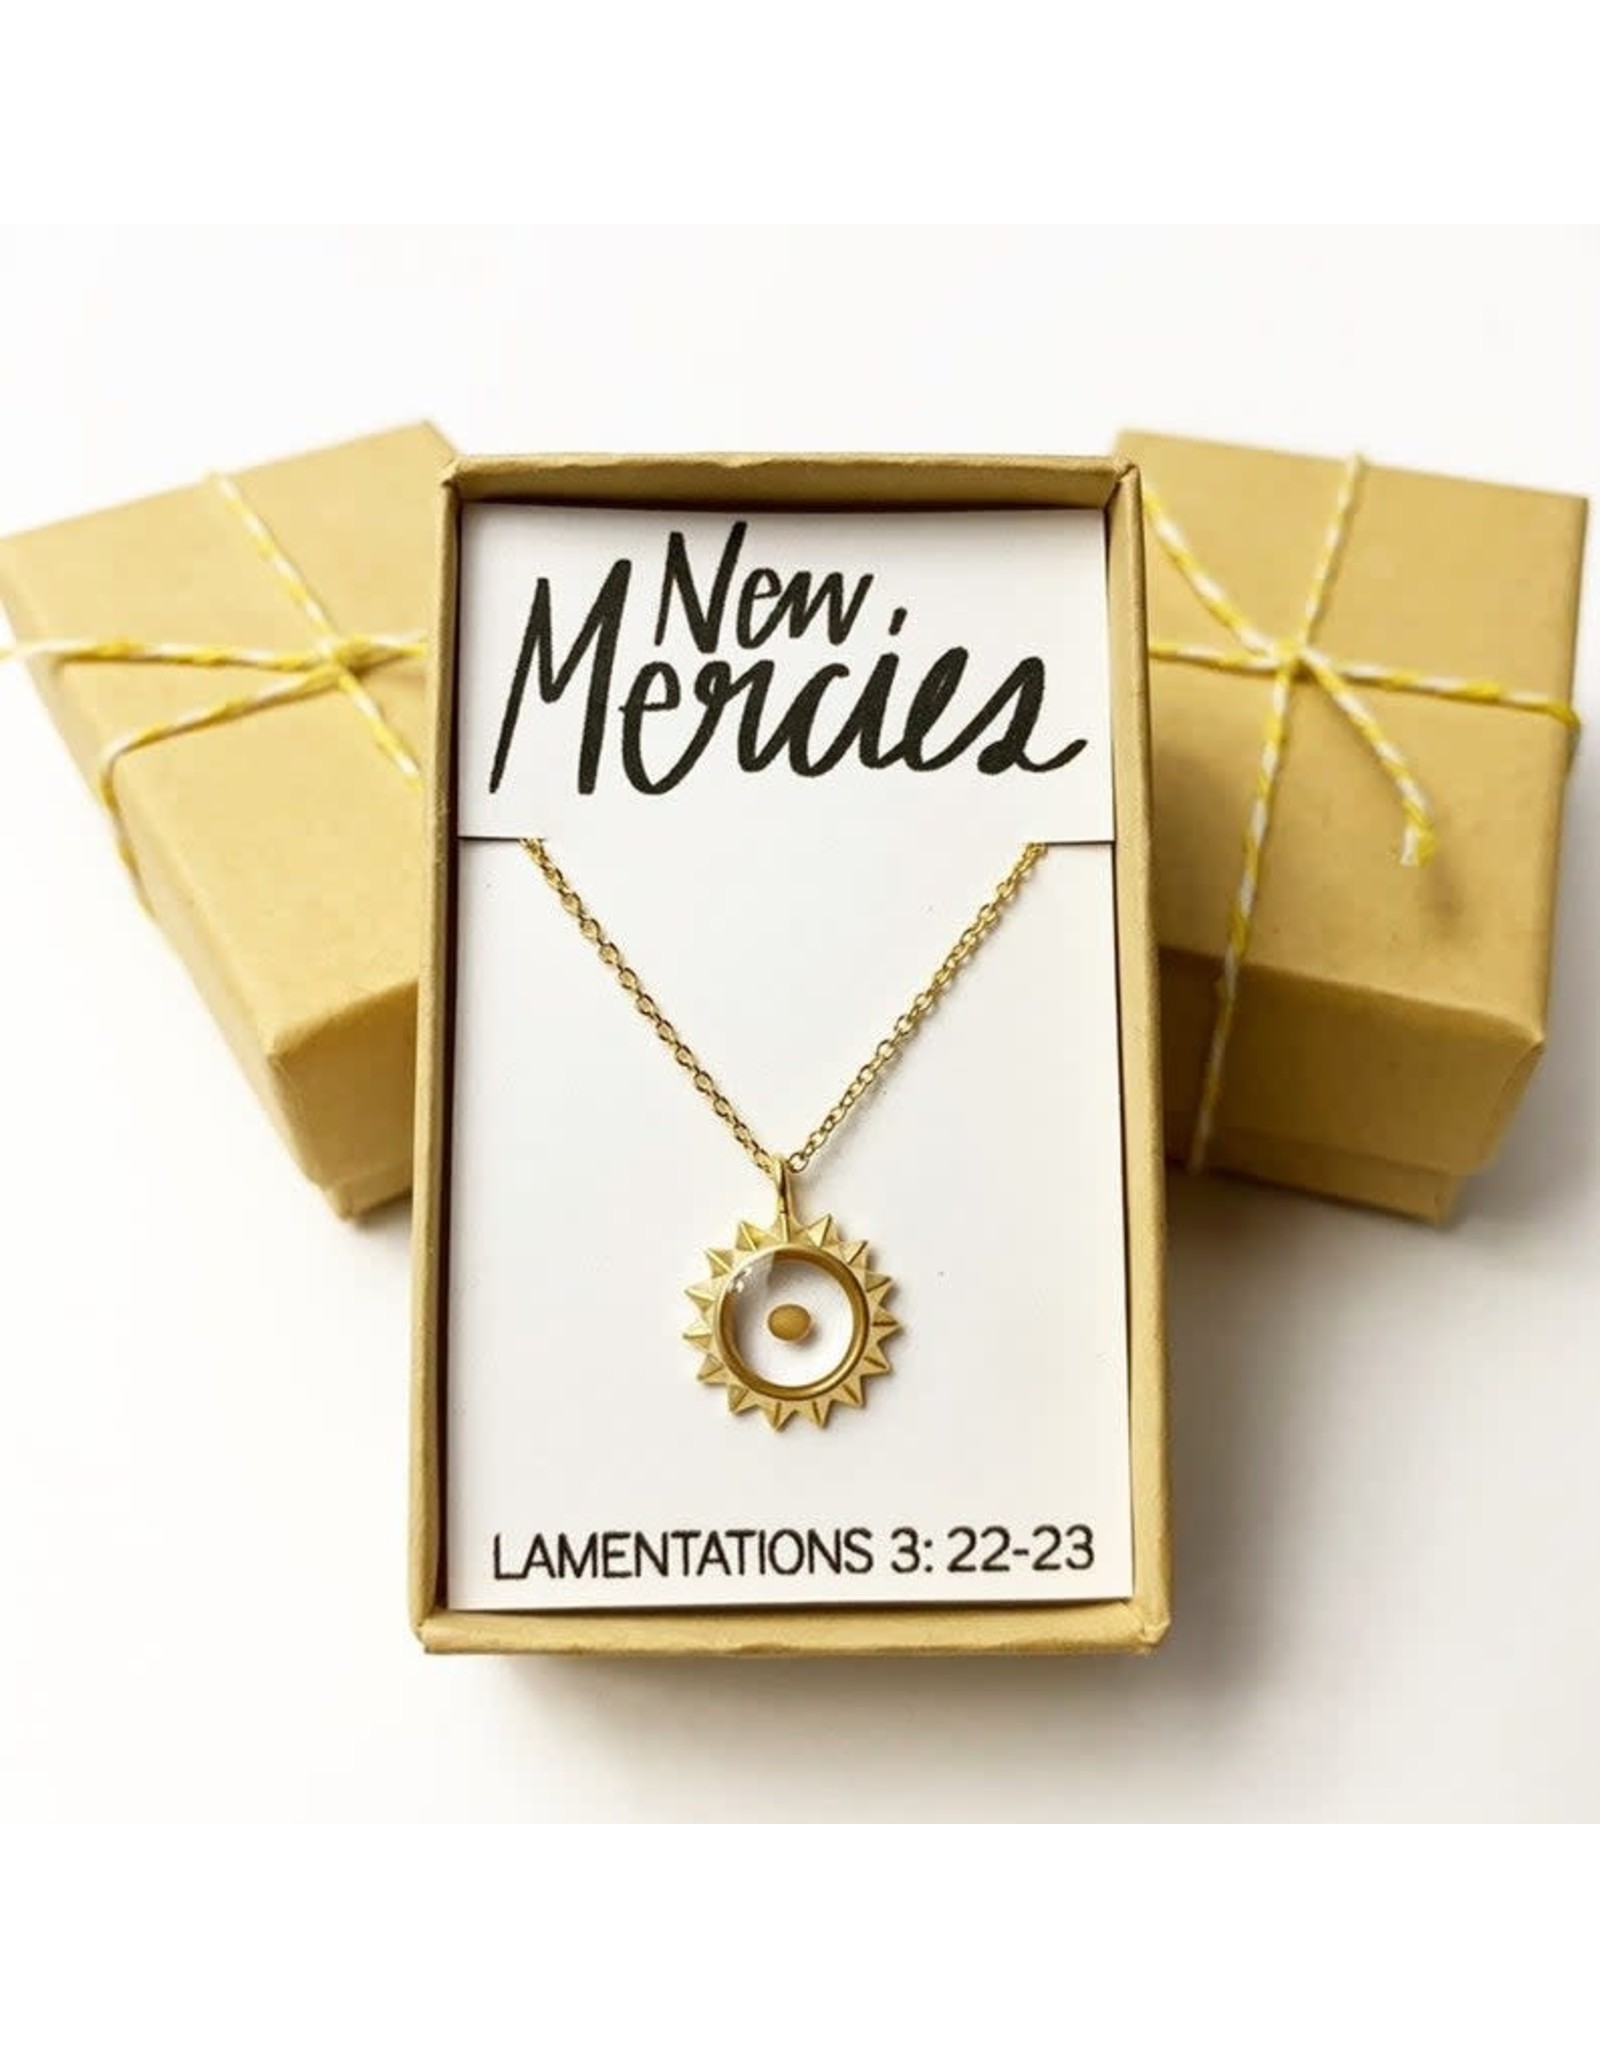 Bible Verse Necklace - New Mercies